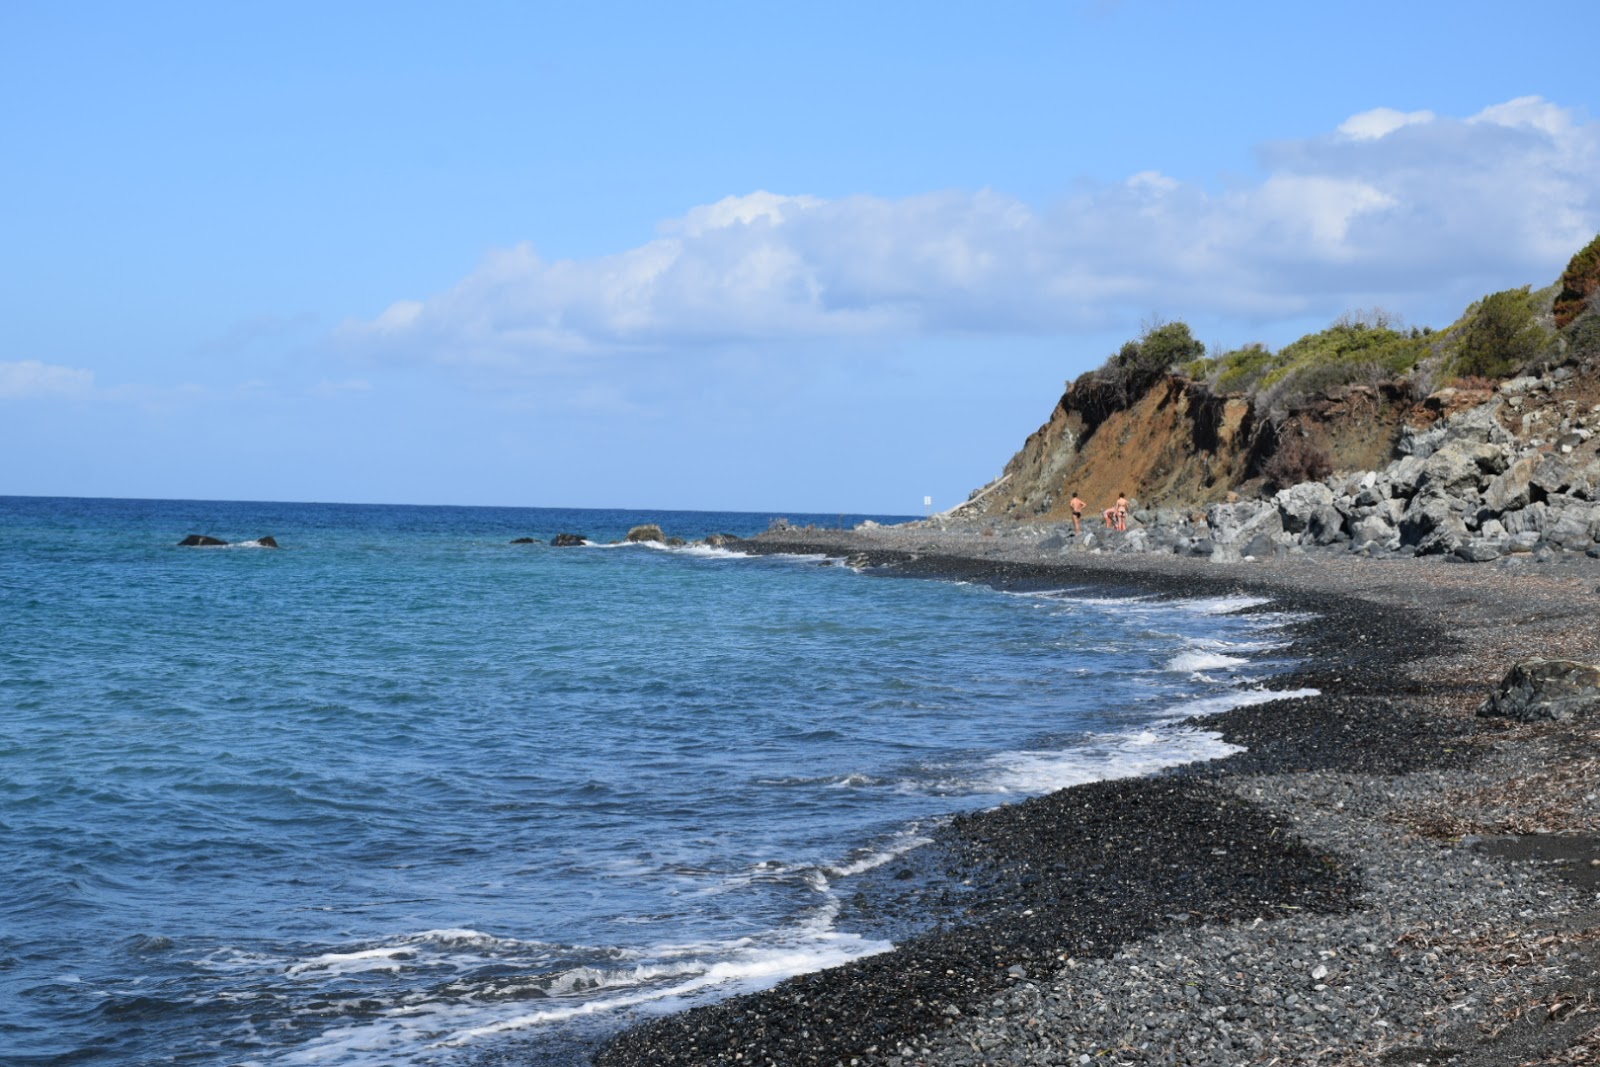 Foto de Spiaggia Le Tombe ubicado en área natural